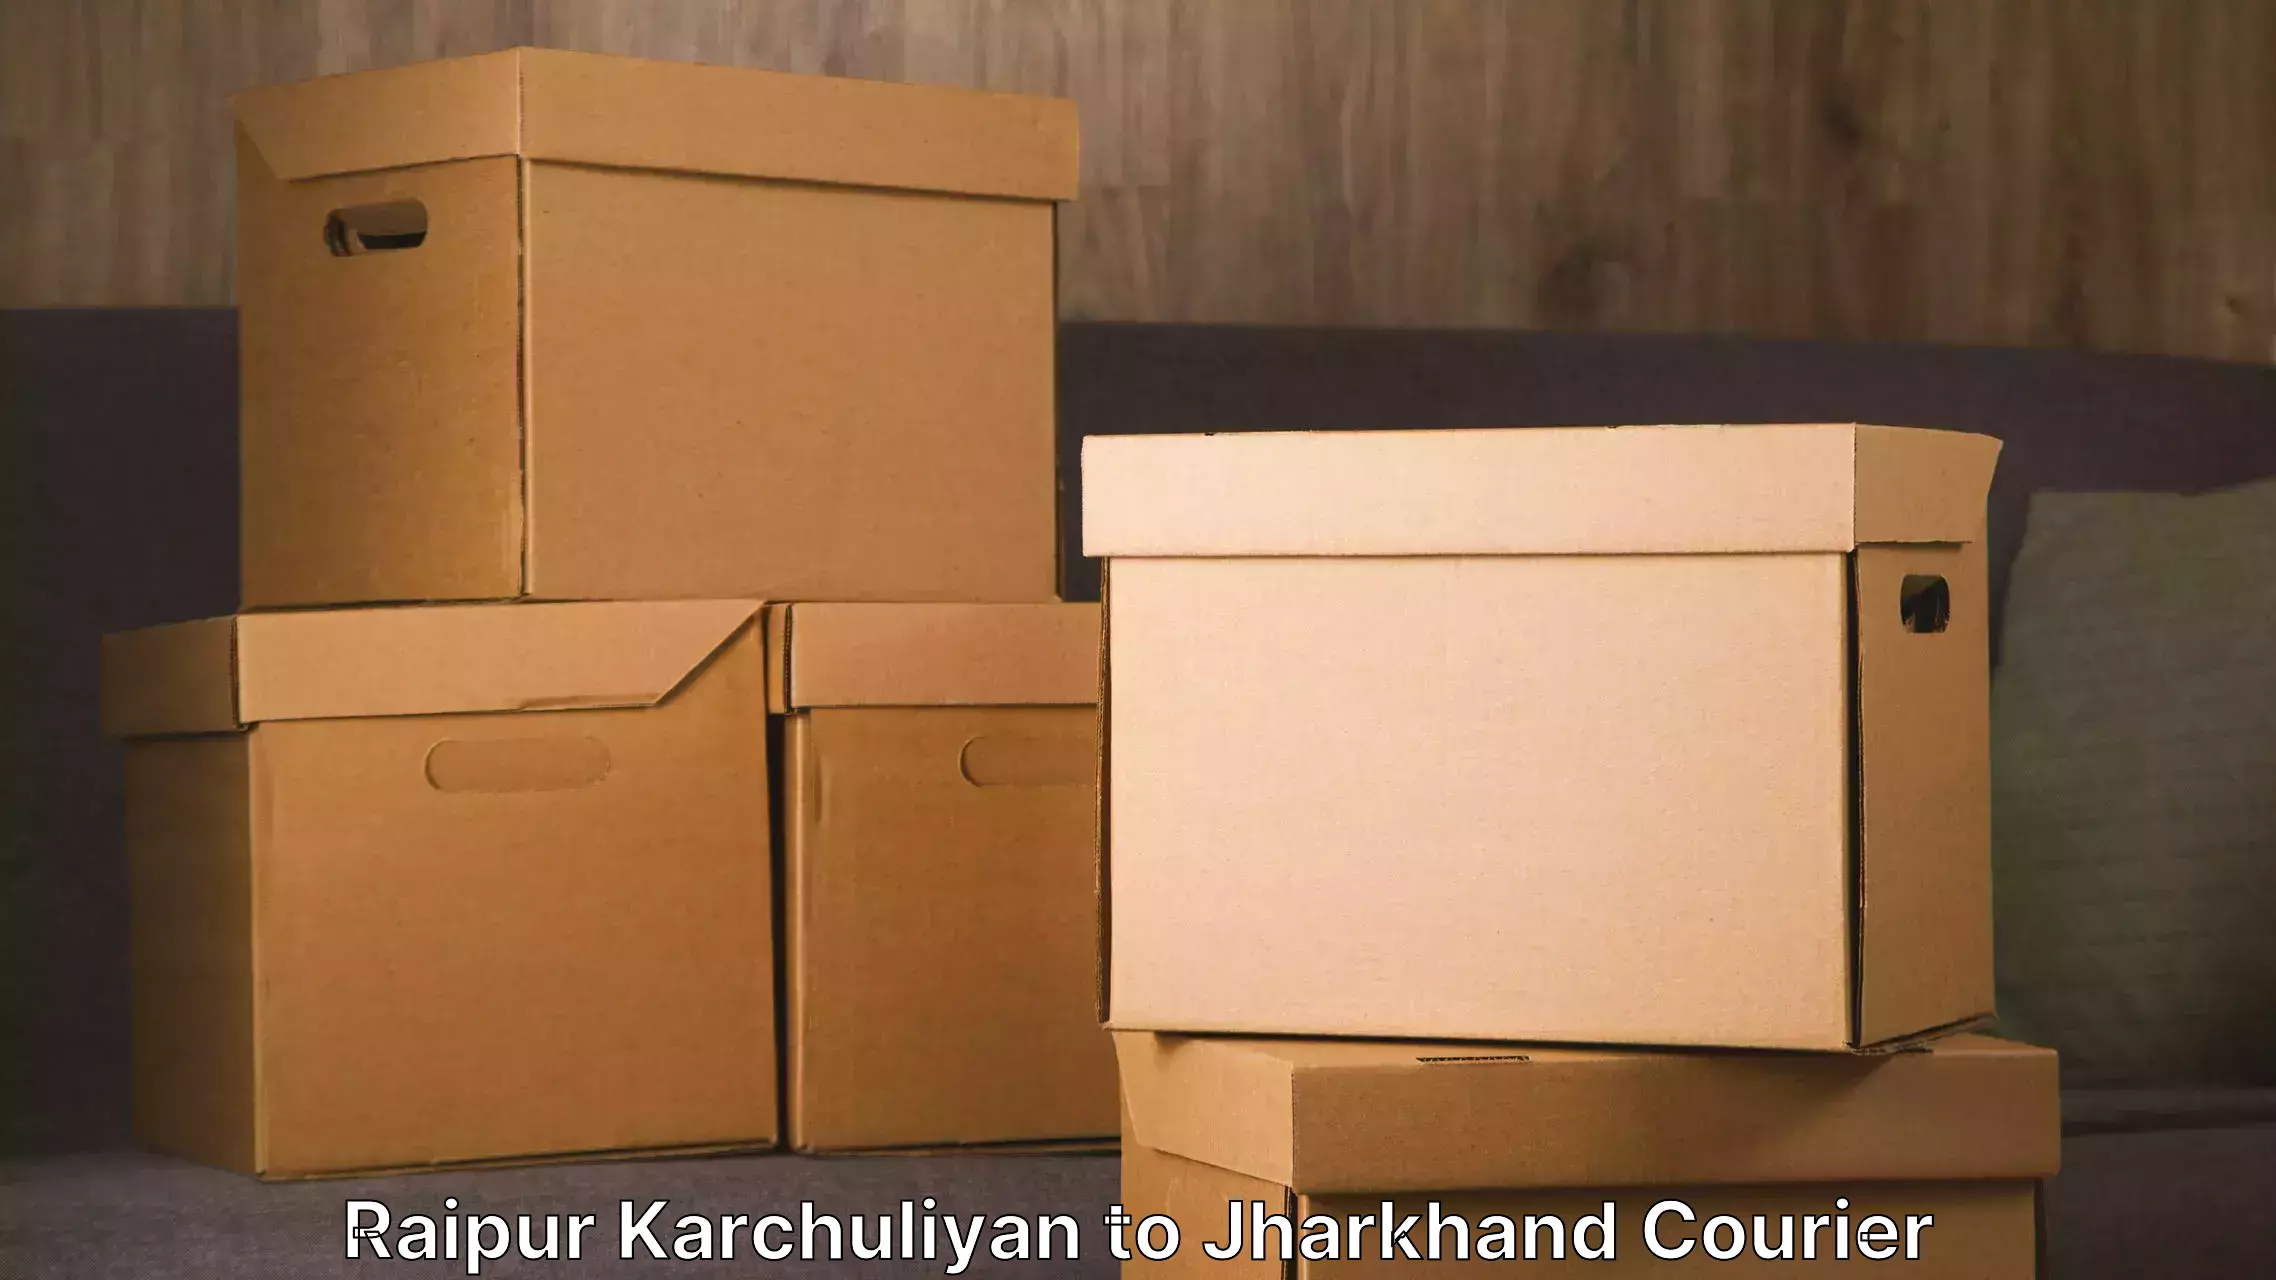 Furniture moving service Raipur Karchuliyan to Bokaro Steel City